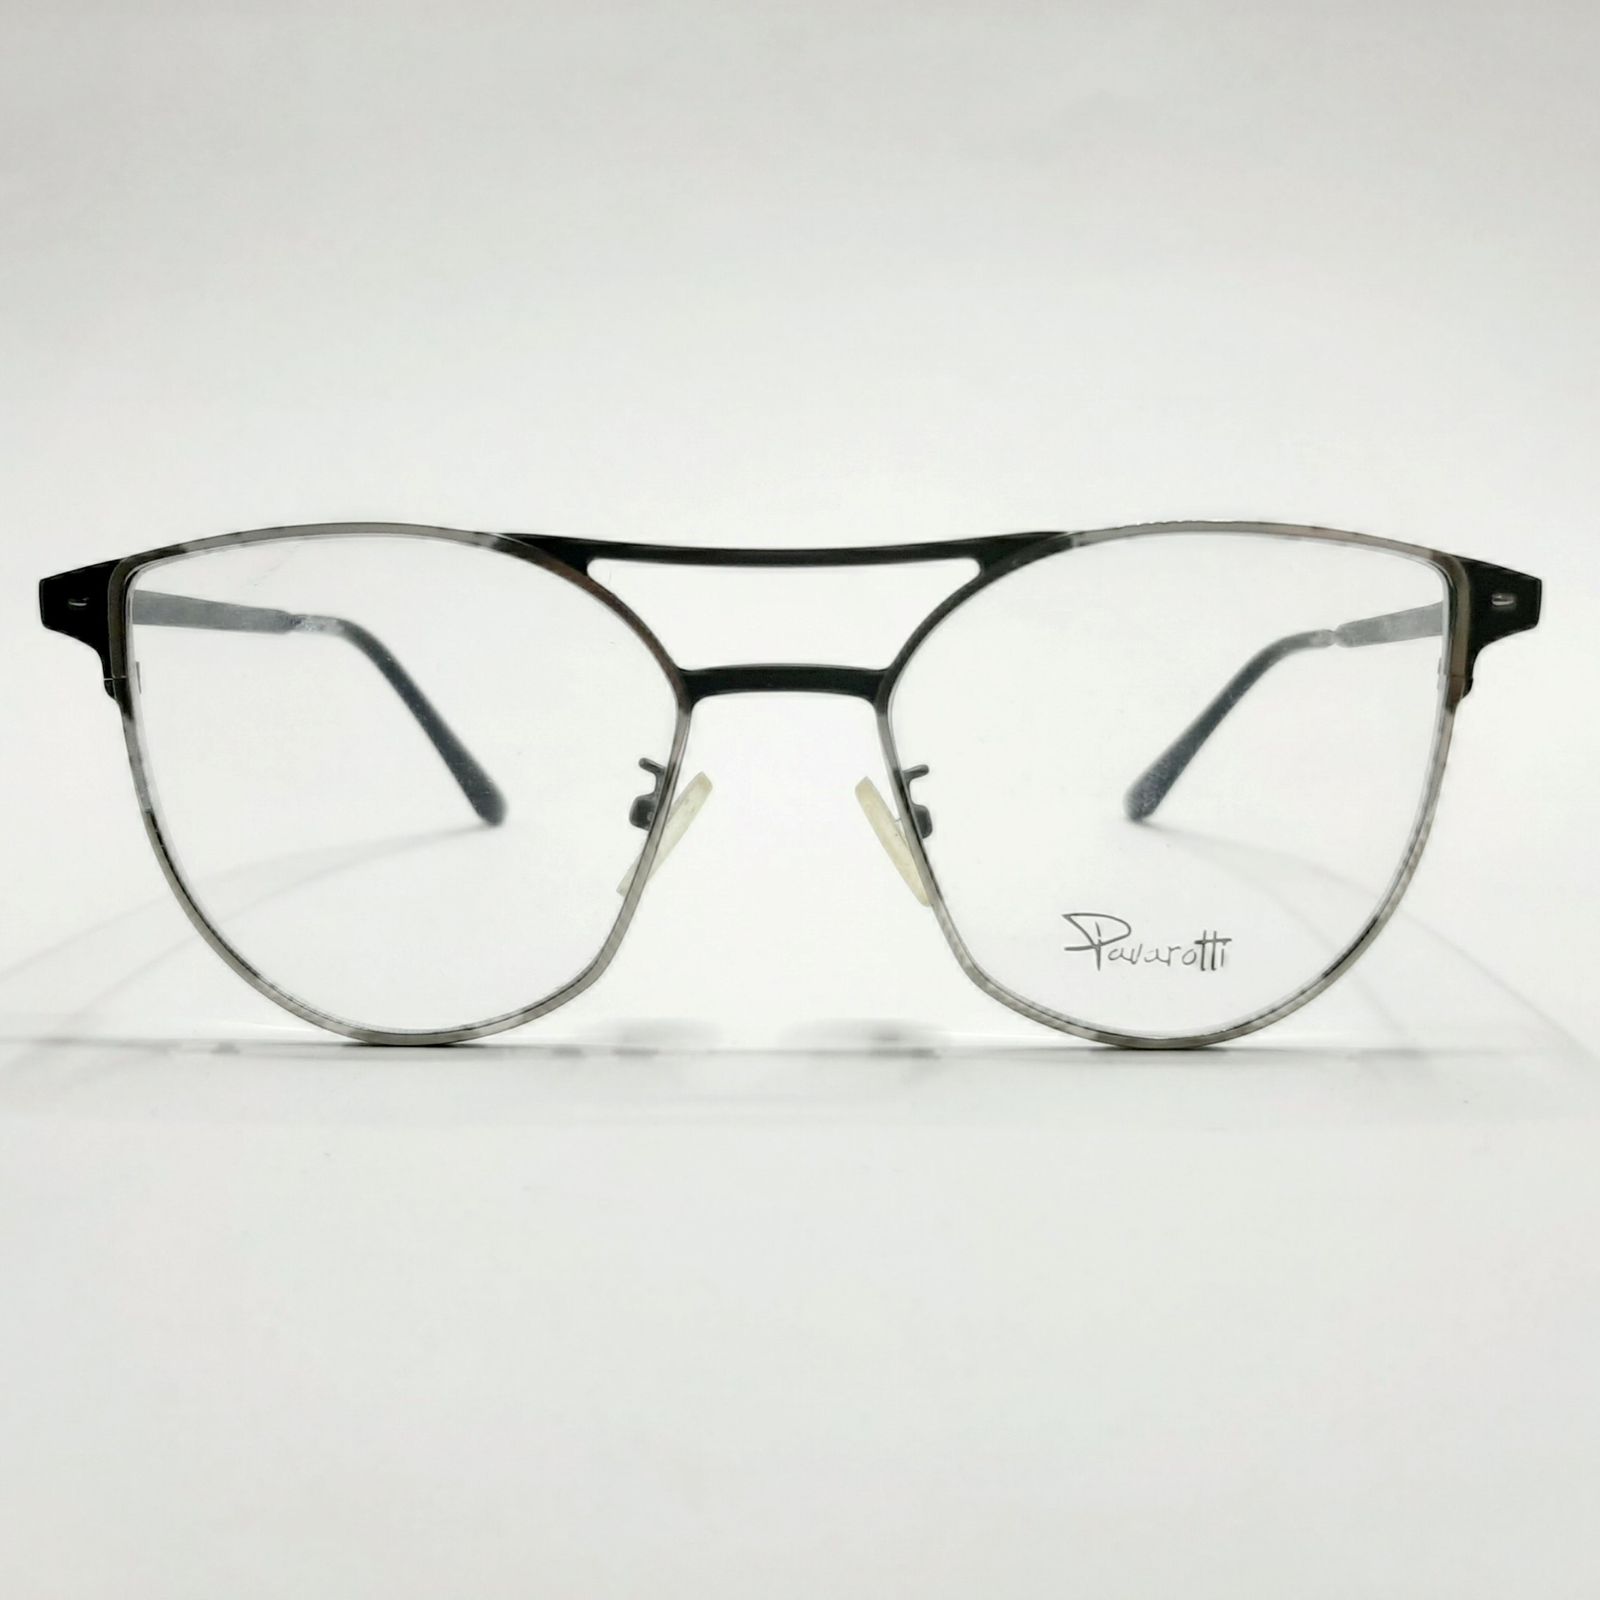 فریم عینک طبی پاواروتی مدل P82001c4 -  - 2